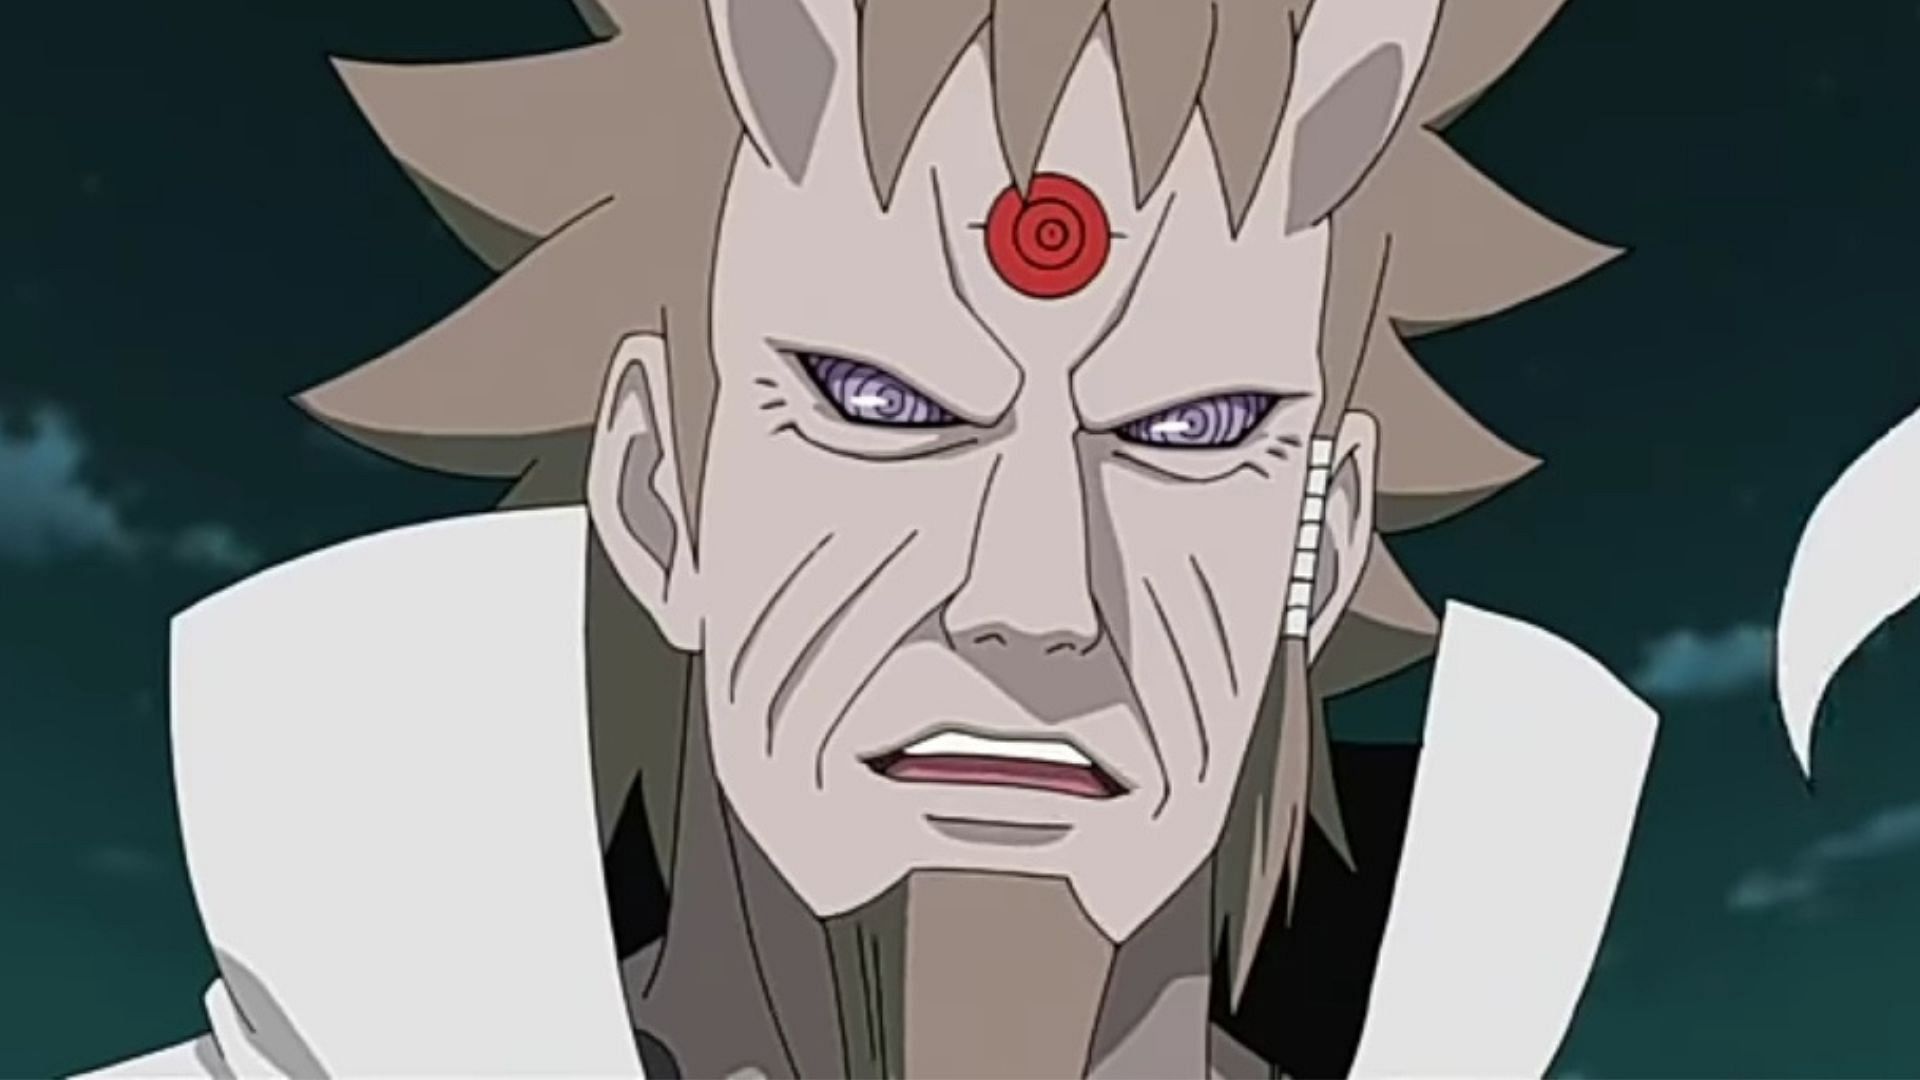 Hagoromo Otsutsuki as seen in Naruto anime (Image via Studio Pierrot)